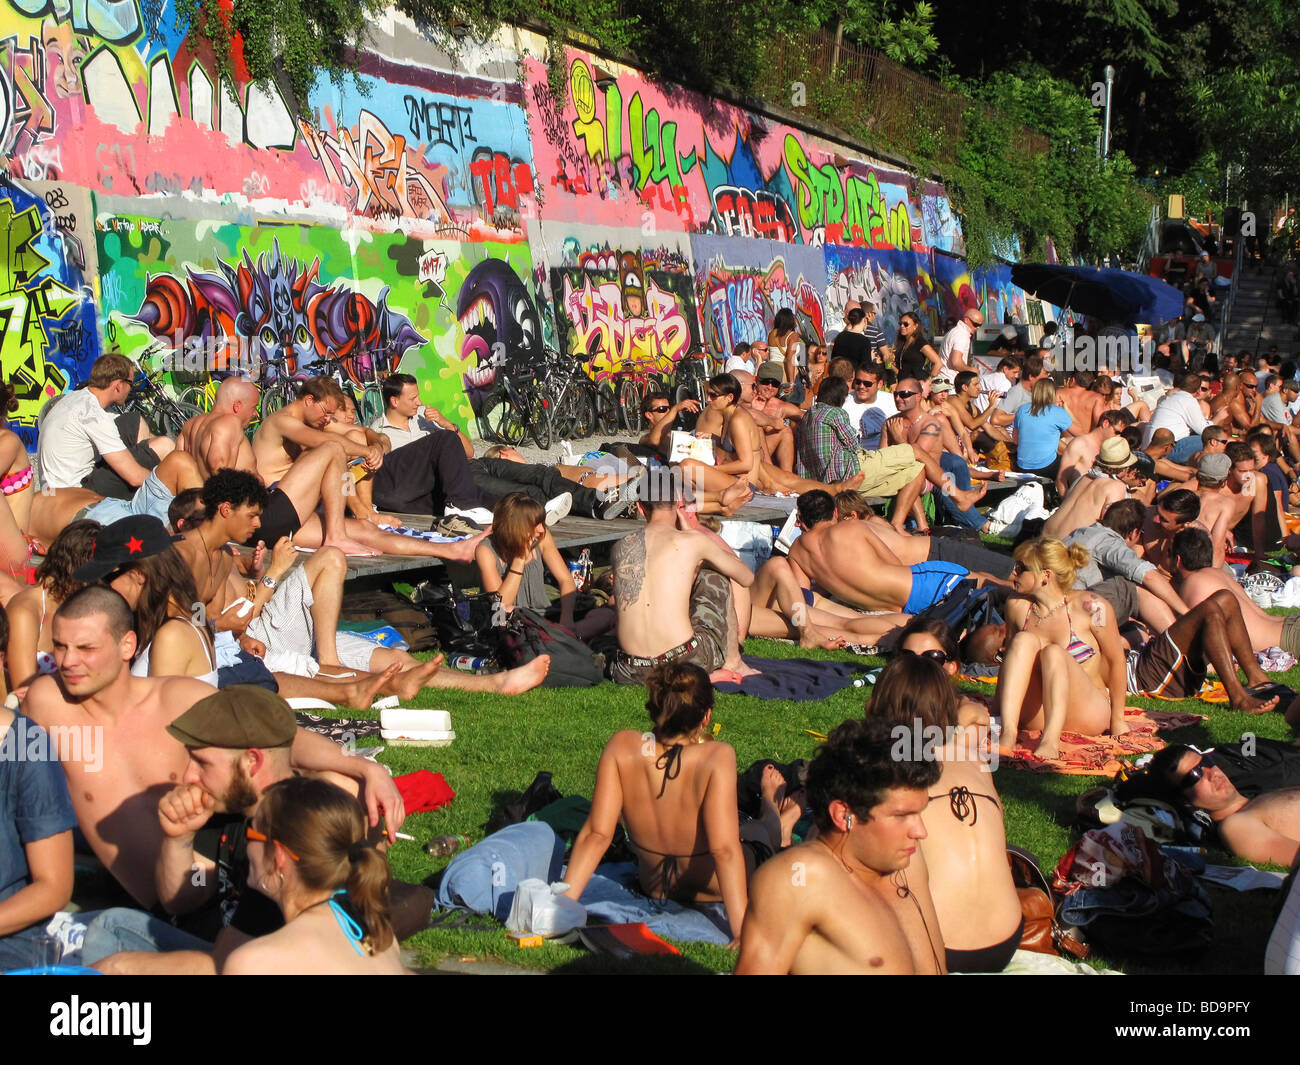 Letten at river Limmat people sunbathing Zurich Switzerland Stock Photo